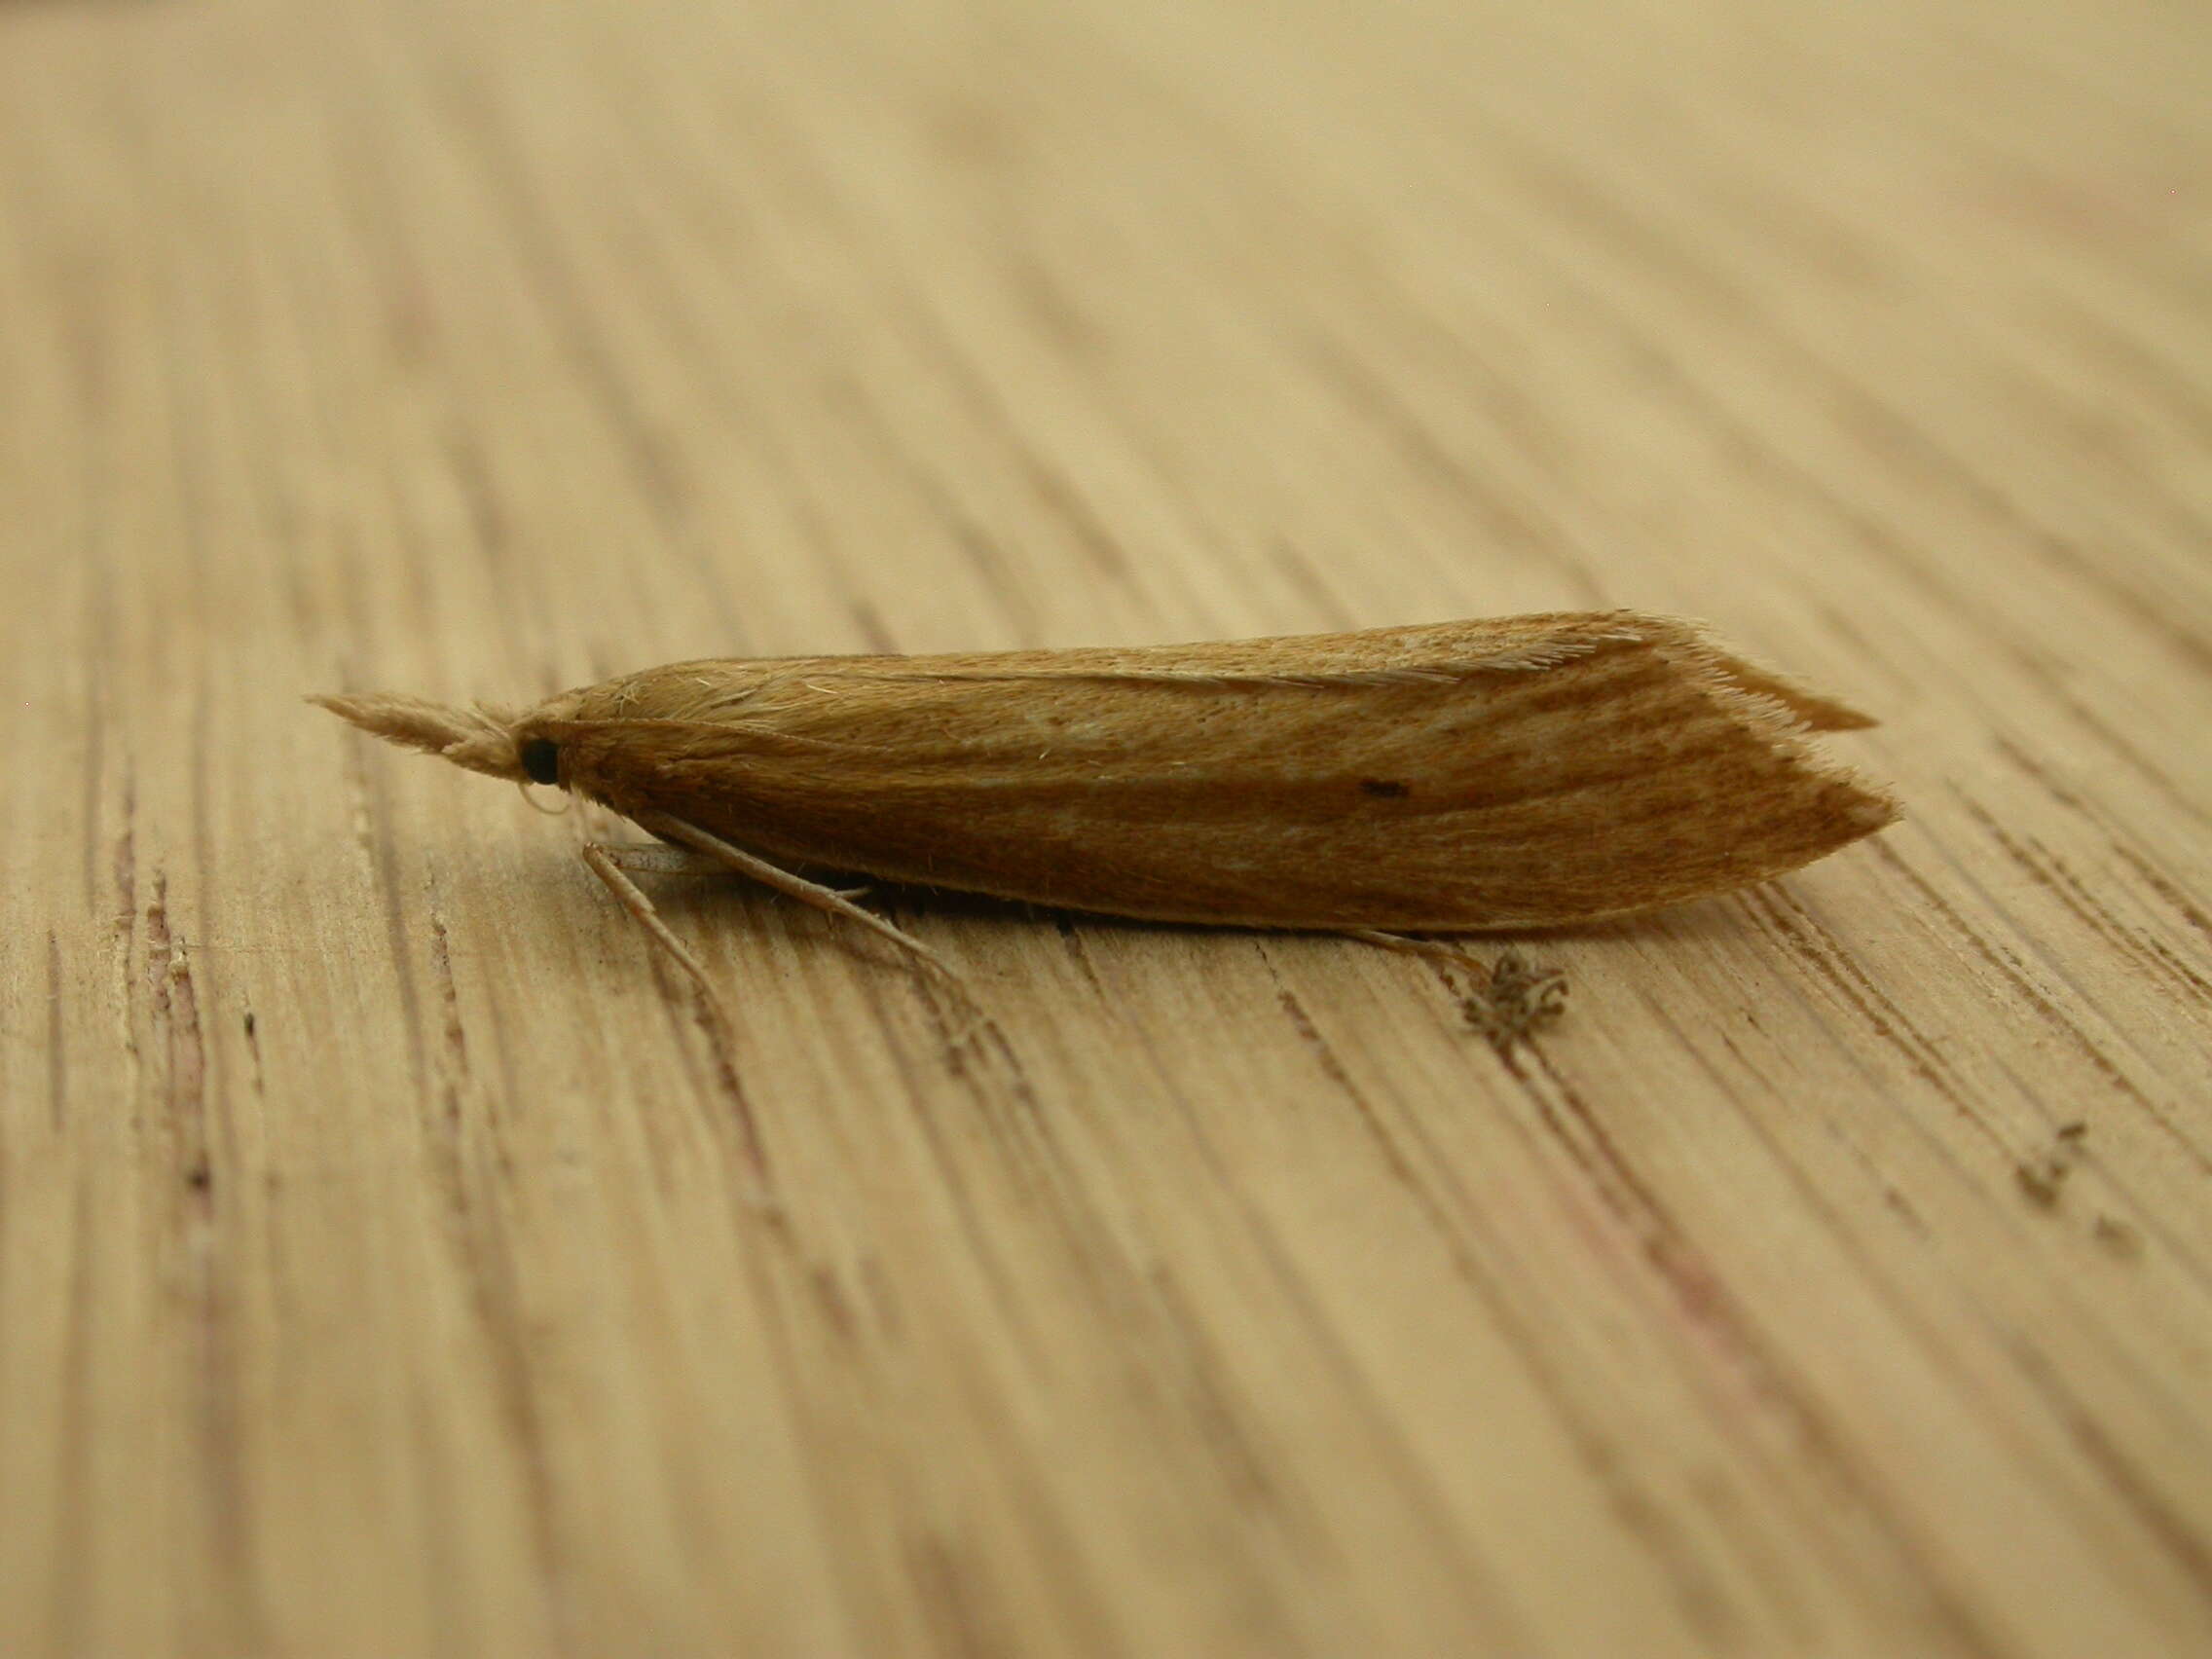 Sivun Insecta kuva